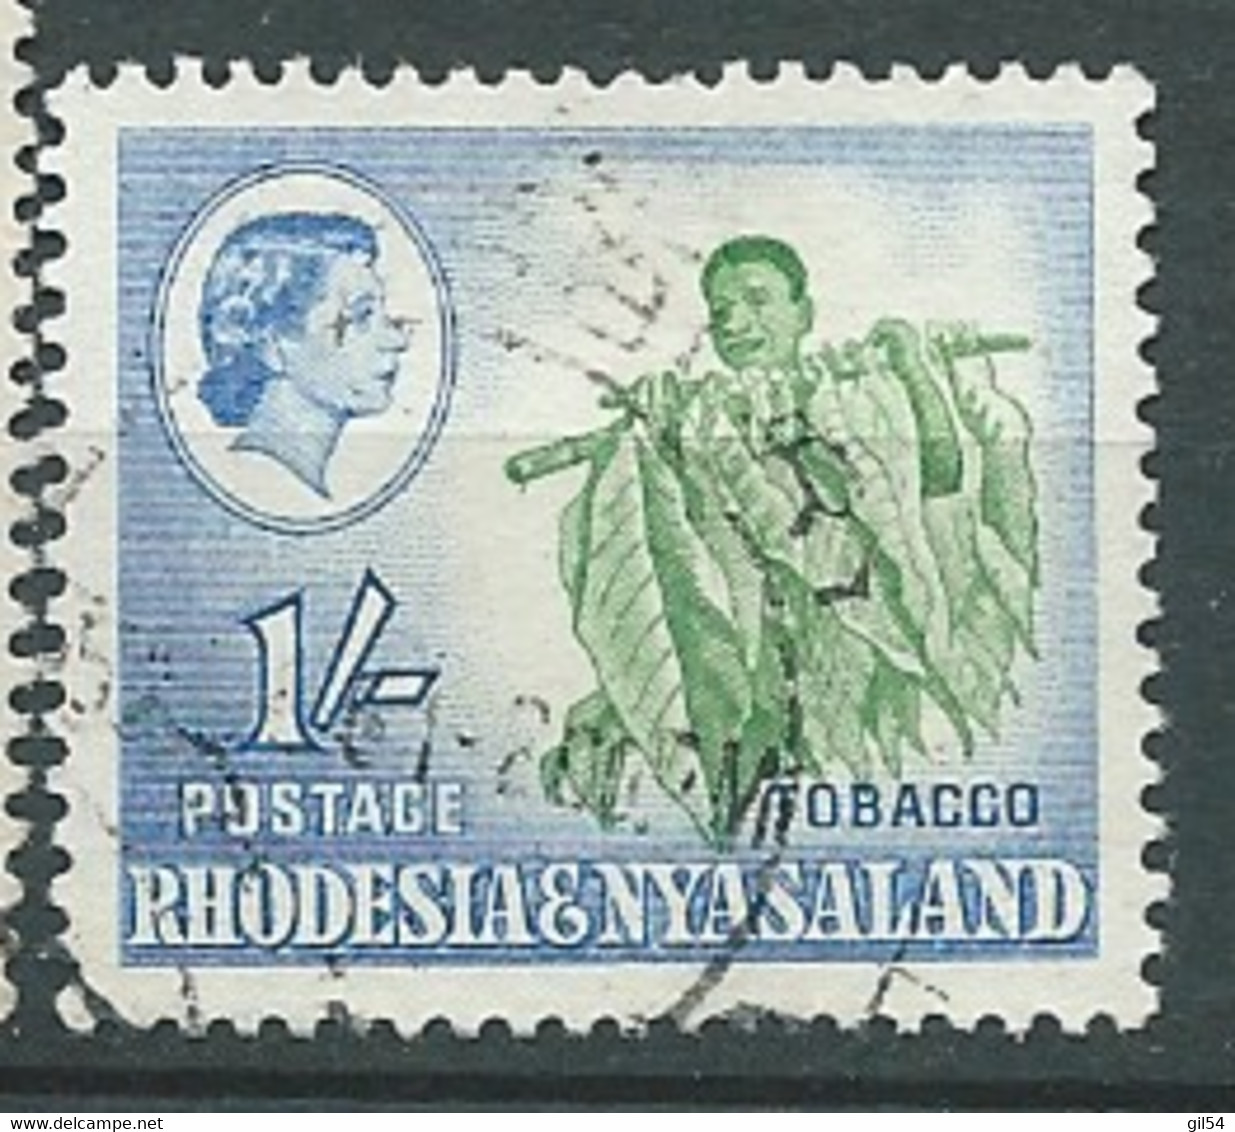 Rhodésie - Nyassaland   - Yvert N° 26 Oblitéré - Pal 10521 - Rodesia & Nyasaland (1954-1963)